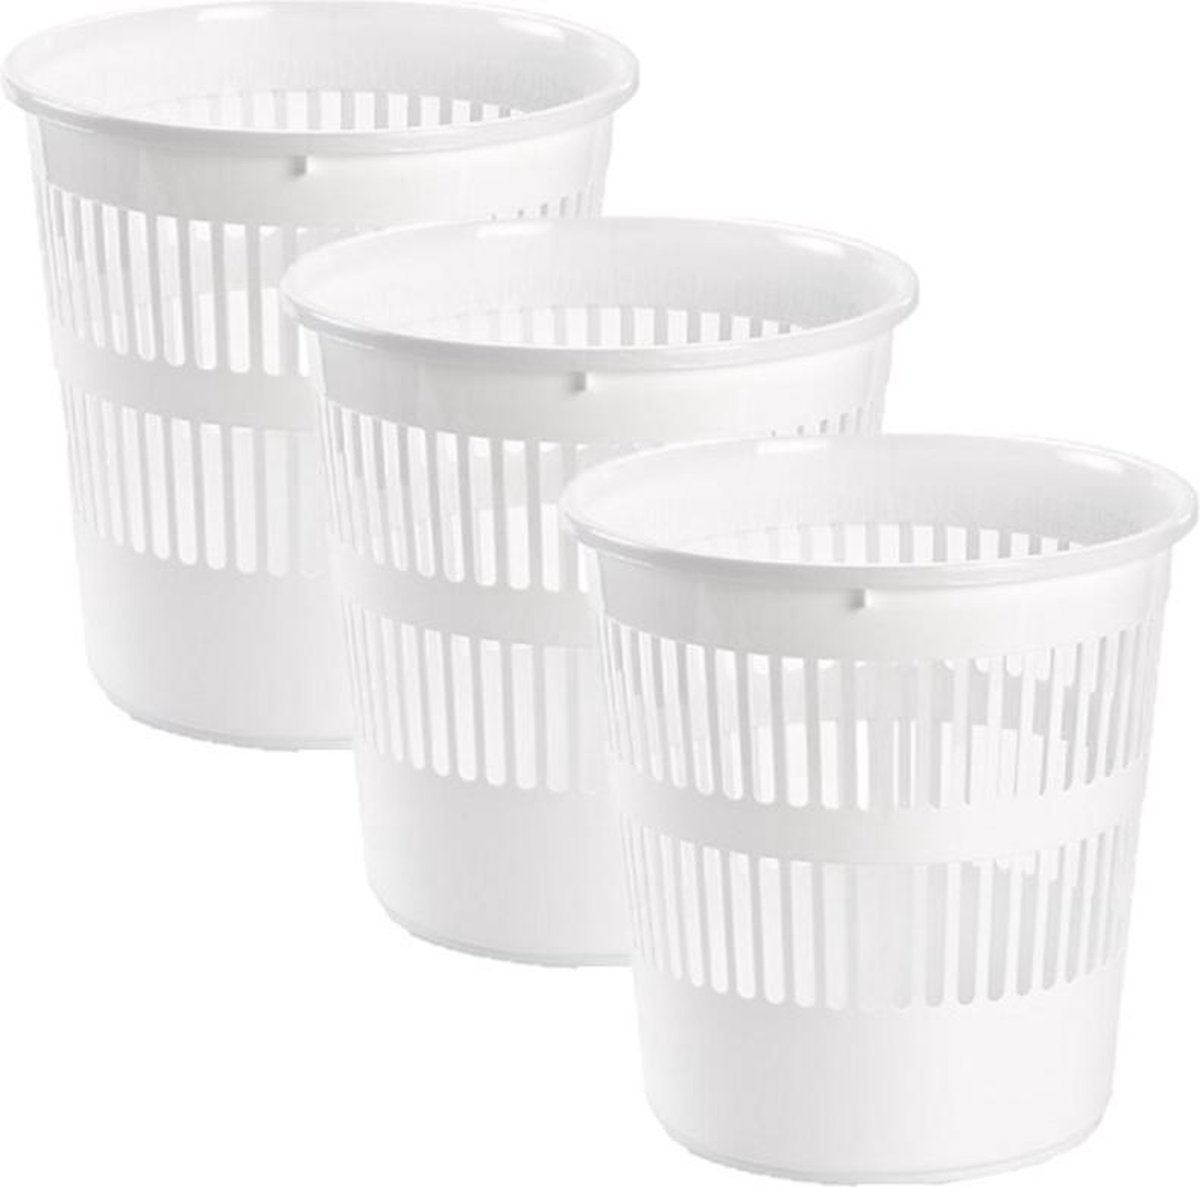 3x stuks afvalbakken/vuilnisbakken plastic wit 28 cm - Vuilnisbak/prullenbakken/papiermand - Kantoor/keuken/slaapkamer